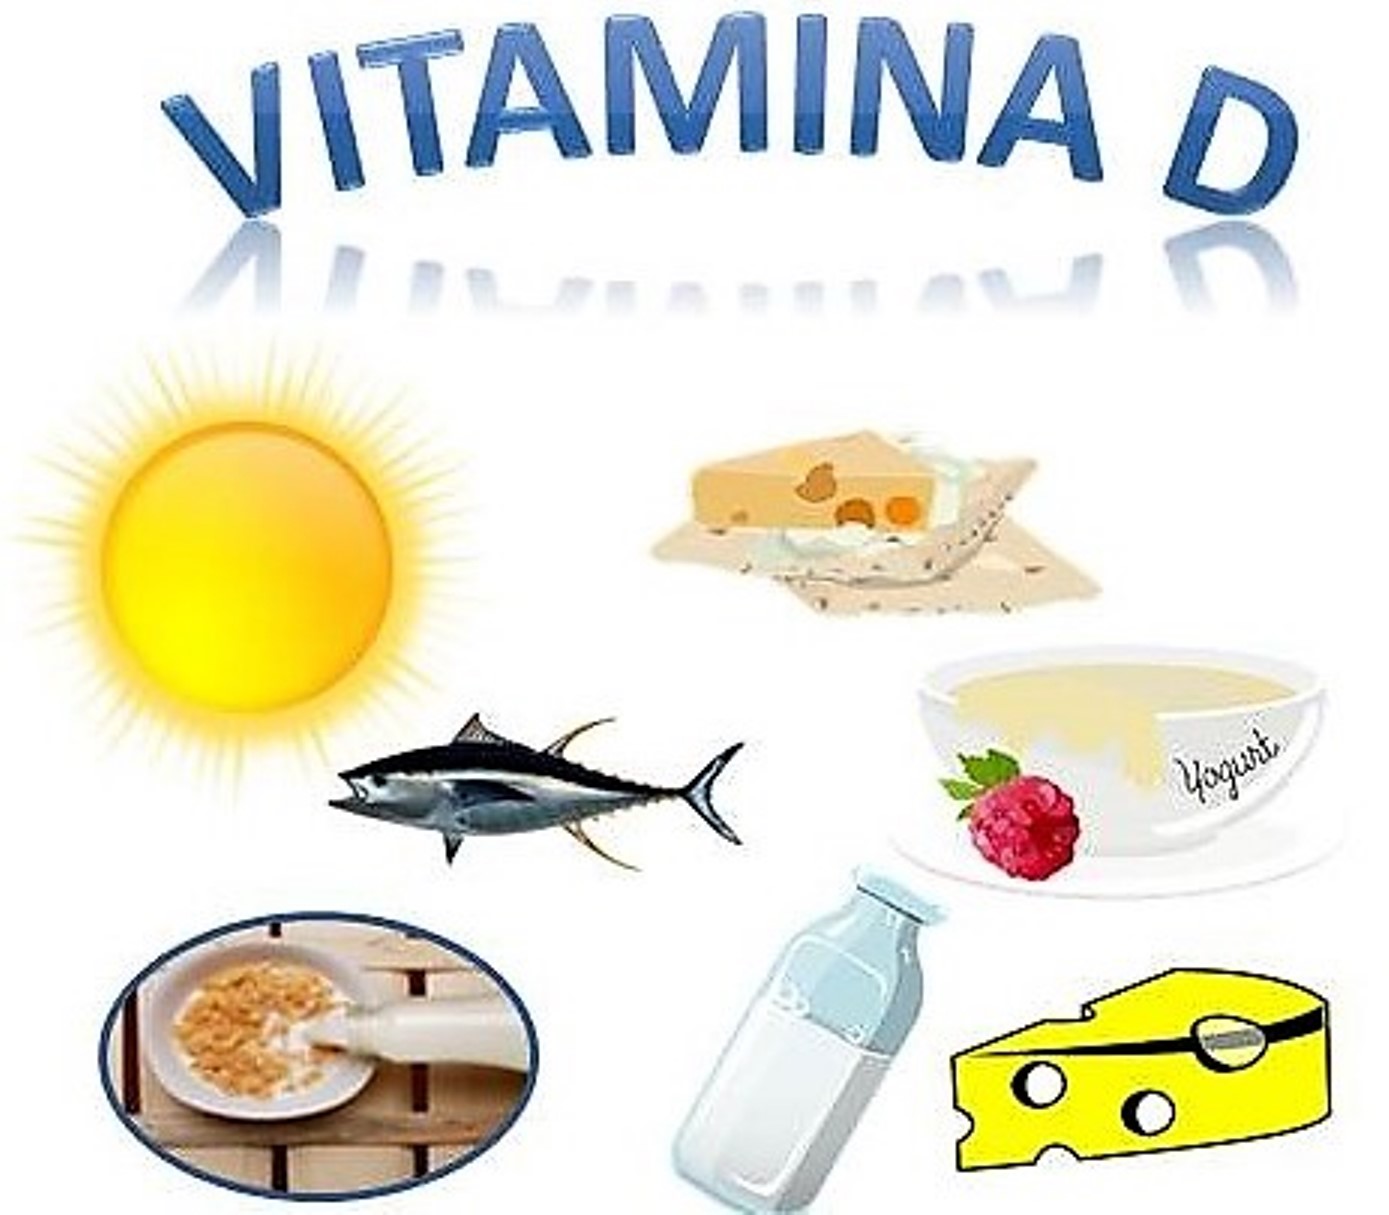 Expertos sanitarios insisten: la vitamina D es beneficiosa contra la Covid